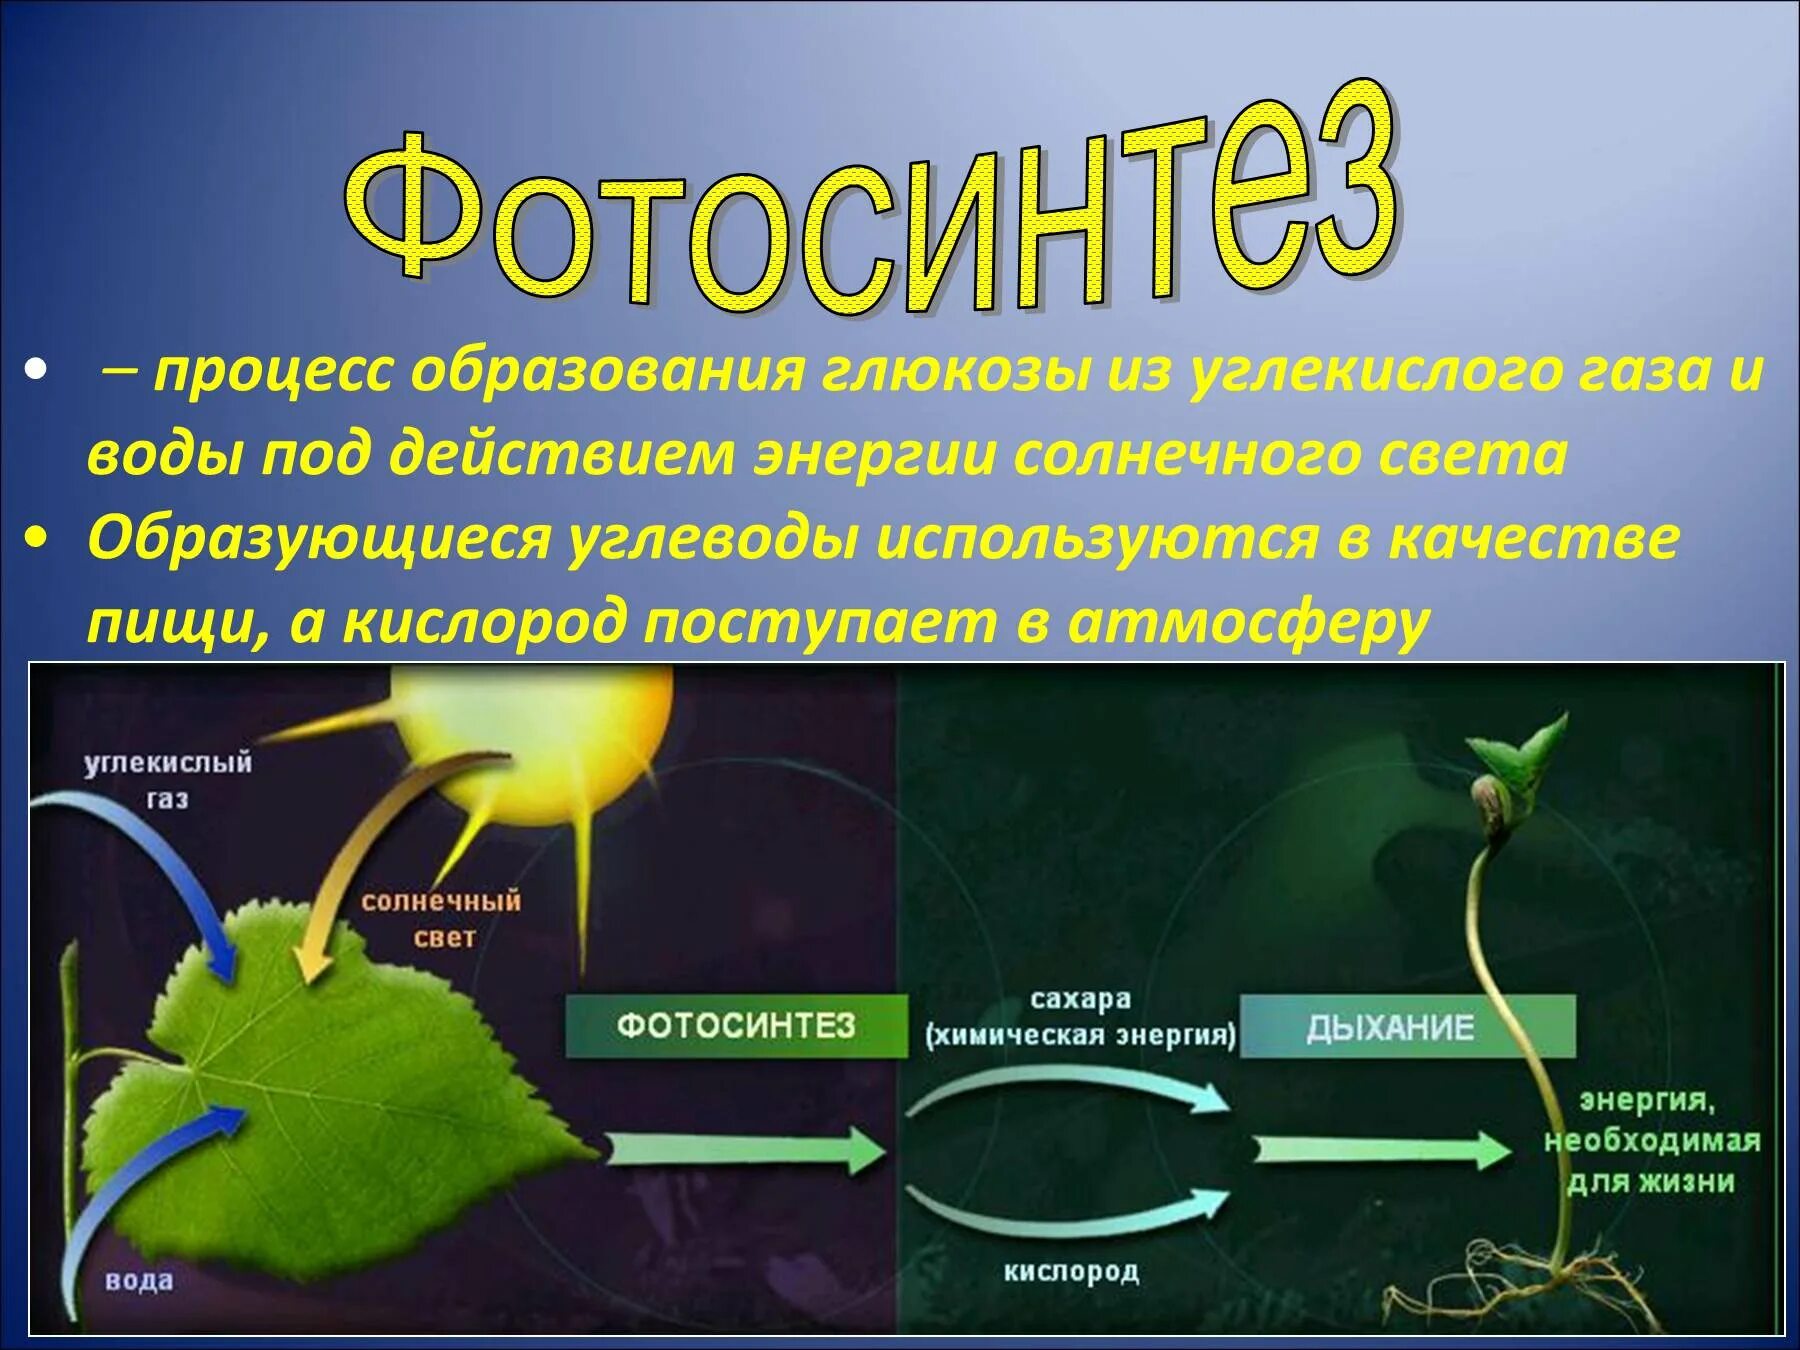 Ajnjcbyntp 6 rkfc ,bjkjubz. Образование Глюкозы в процессе фотосинтеза. 3 Стадии фотосинтеза. Фотосинтез 9 класс биология. Способны использовать энергию света